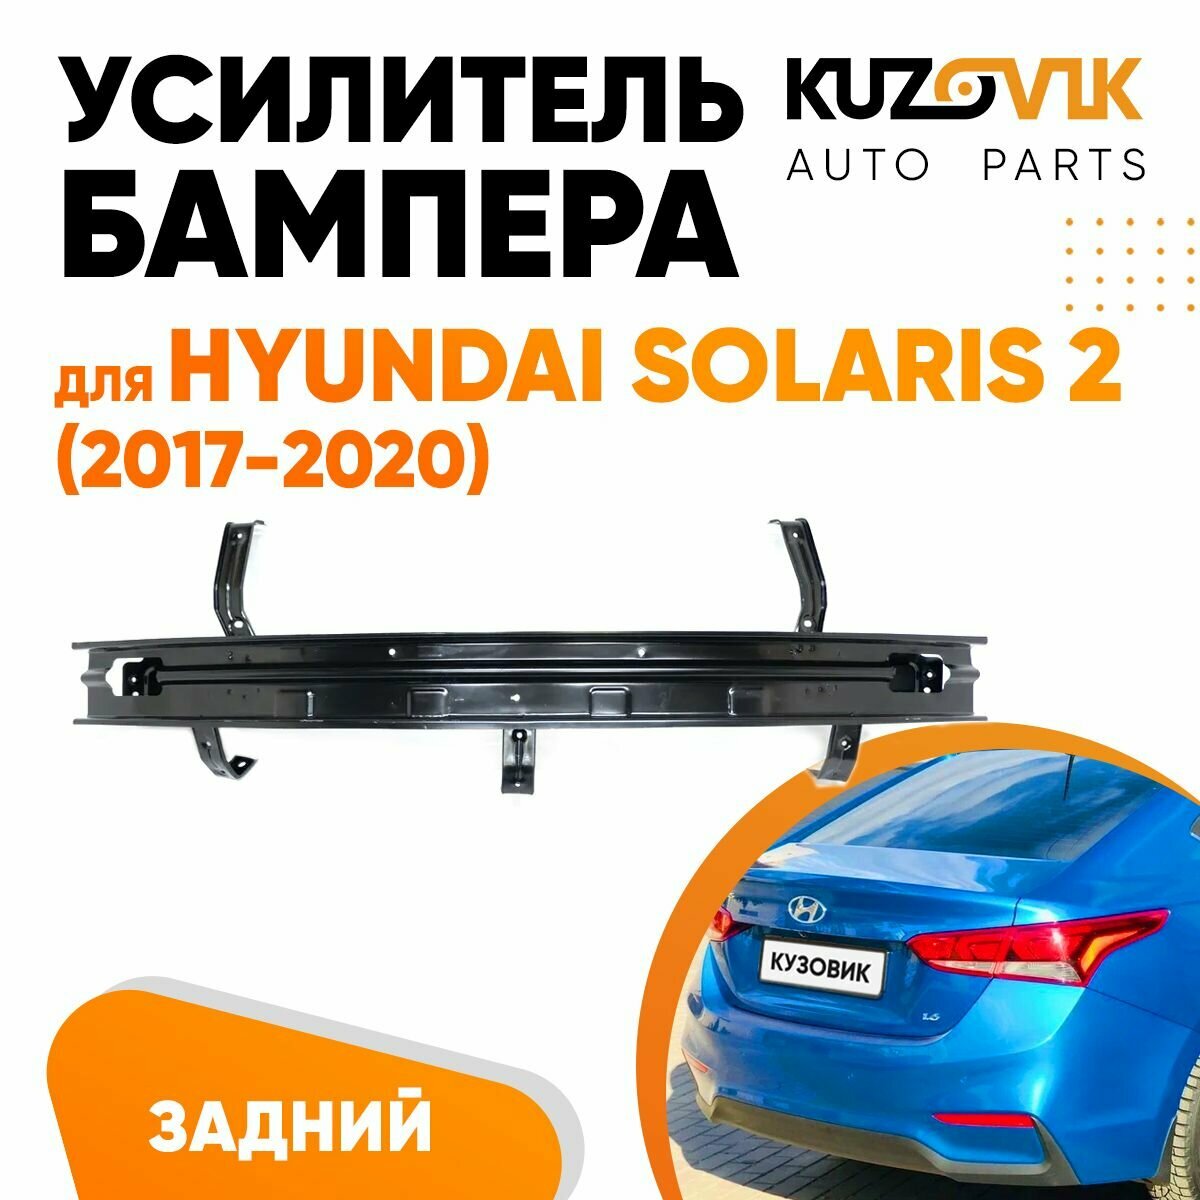 Усилитель заднего бампера для Хендай Солярис Hyundai Solaris 2 (2017-2020), абсорбер